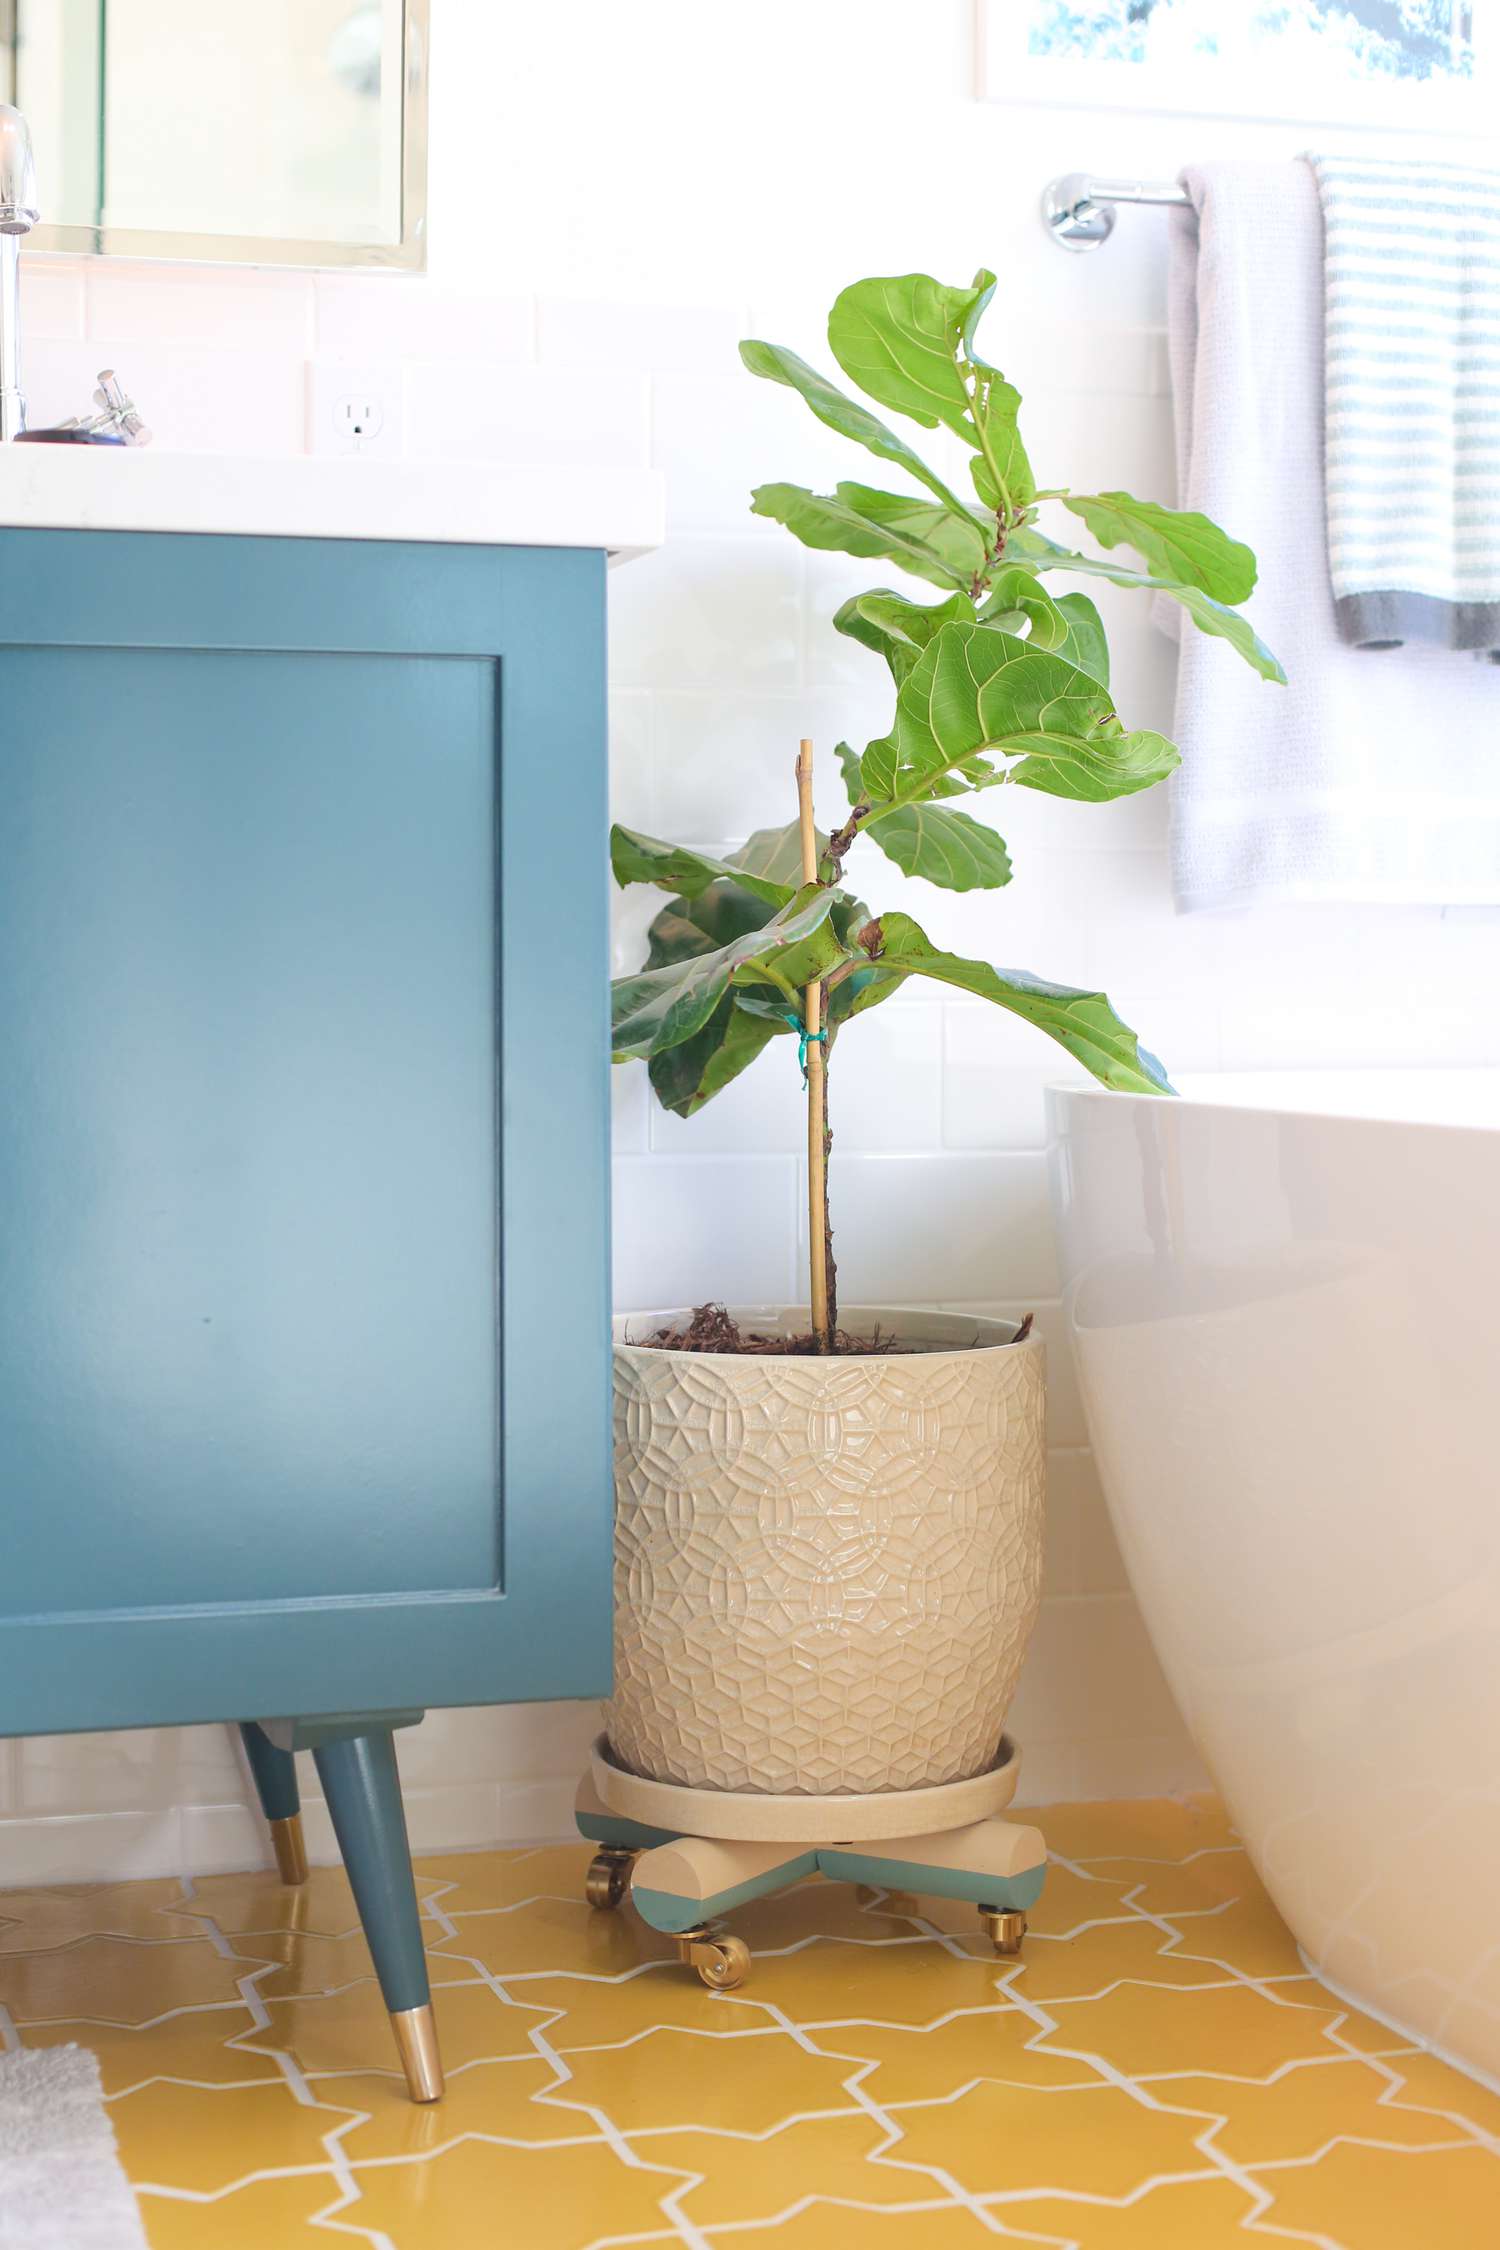 Badezimmer mit einer Topfpflanze